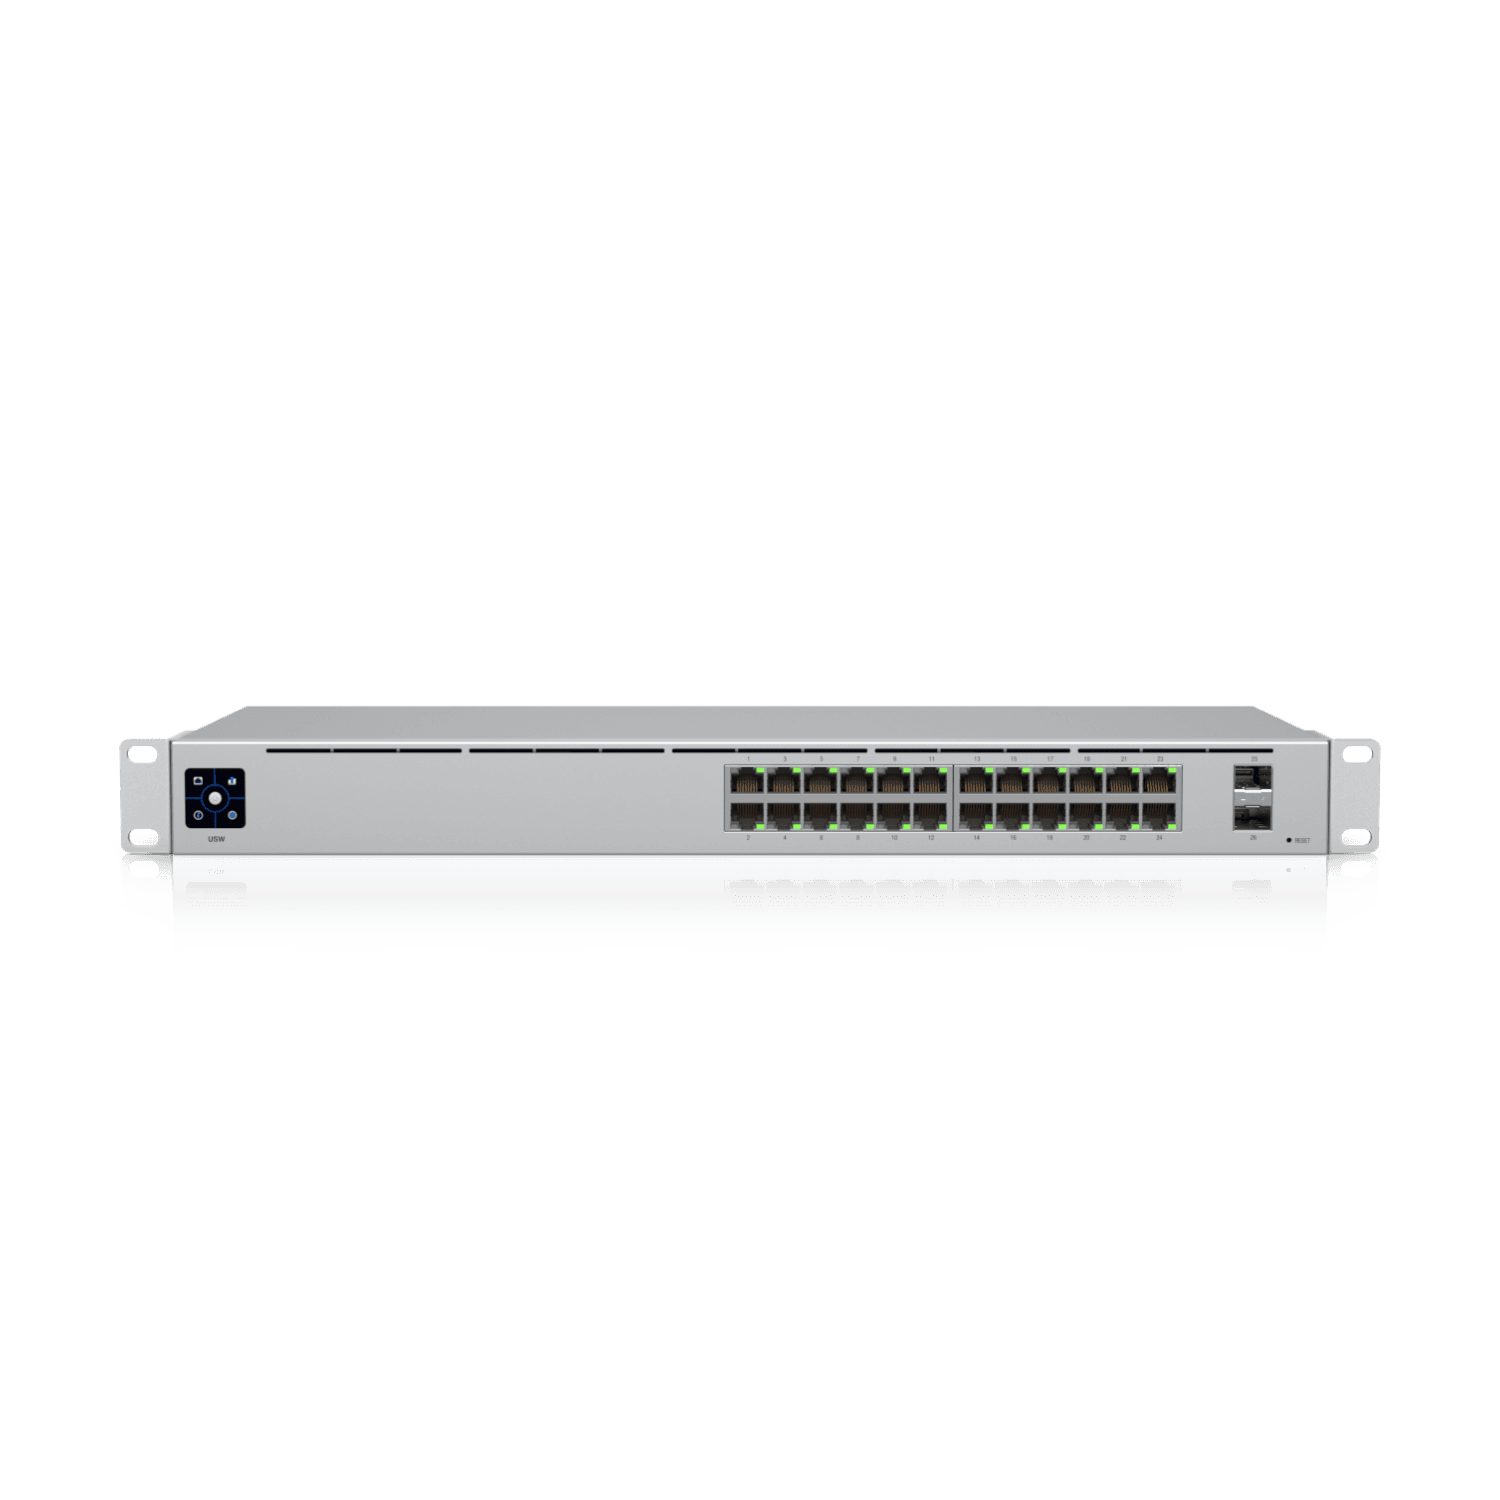 Ubiquiti Networks US-24 24-Port UniFi Managed Gigabit Switch w